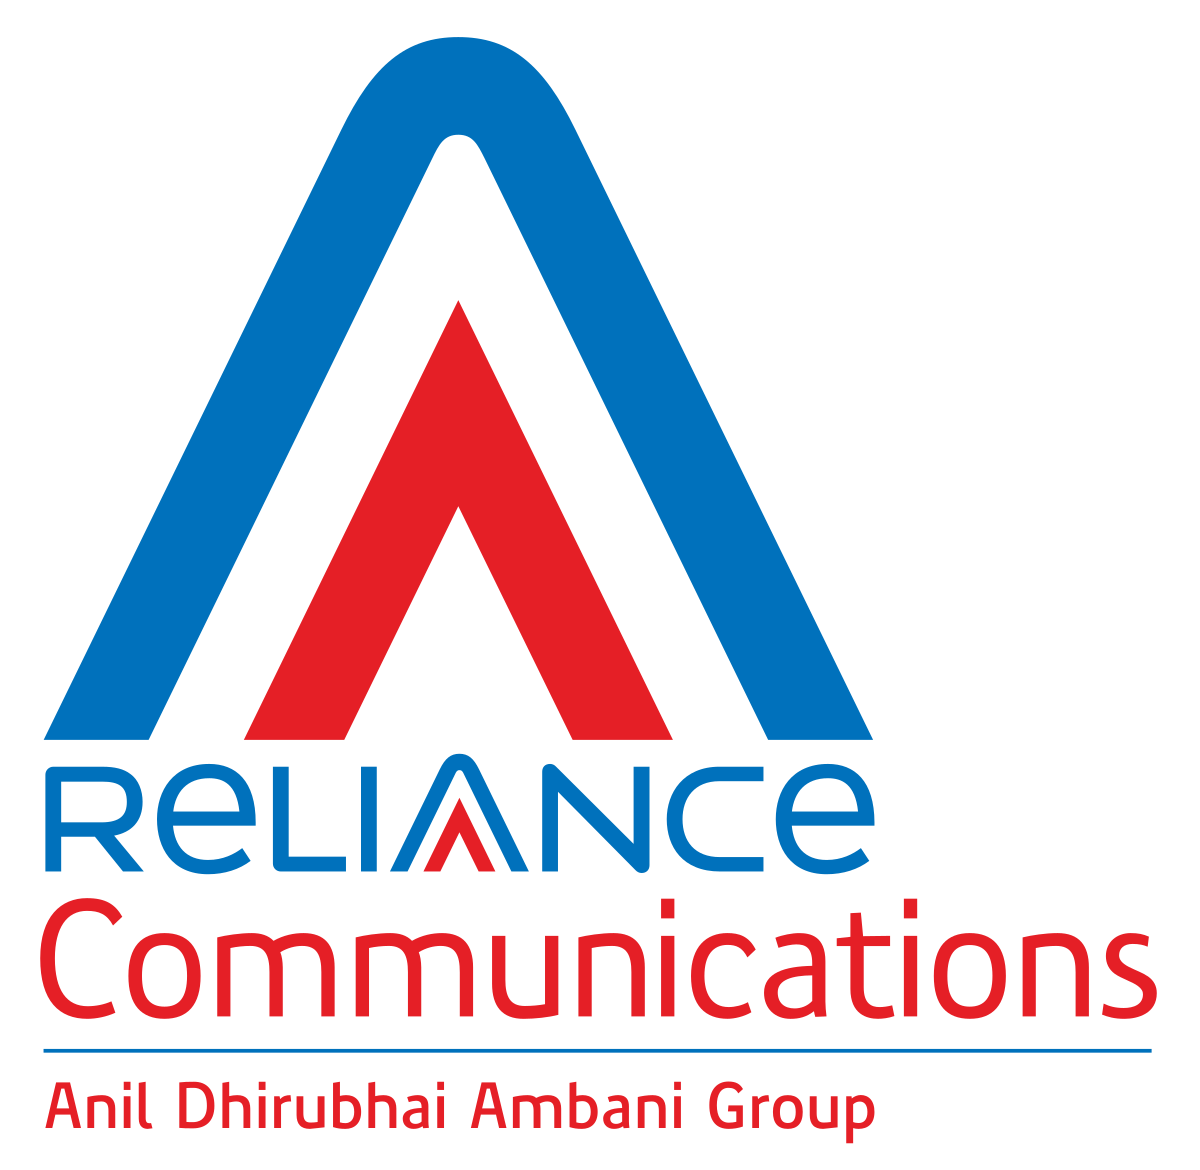 Reliance Communications - Wikipedia